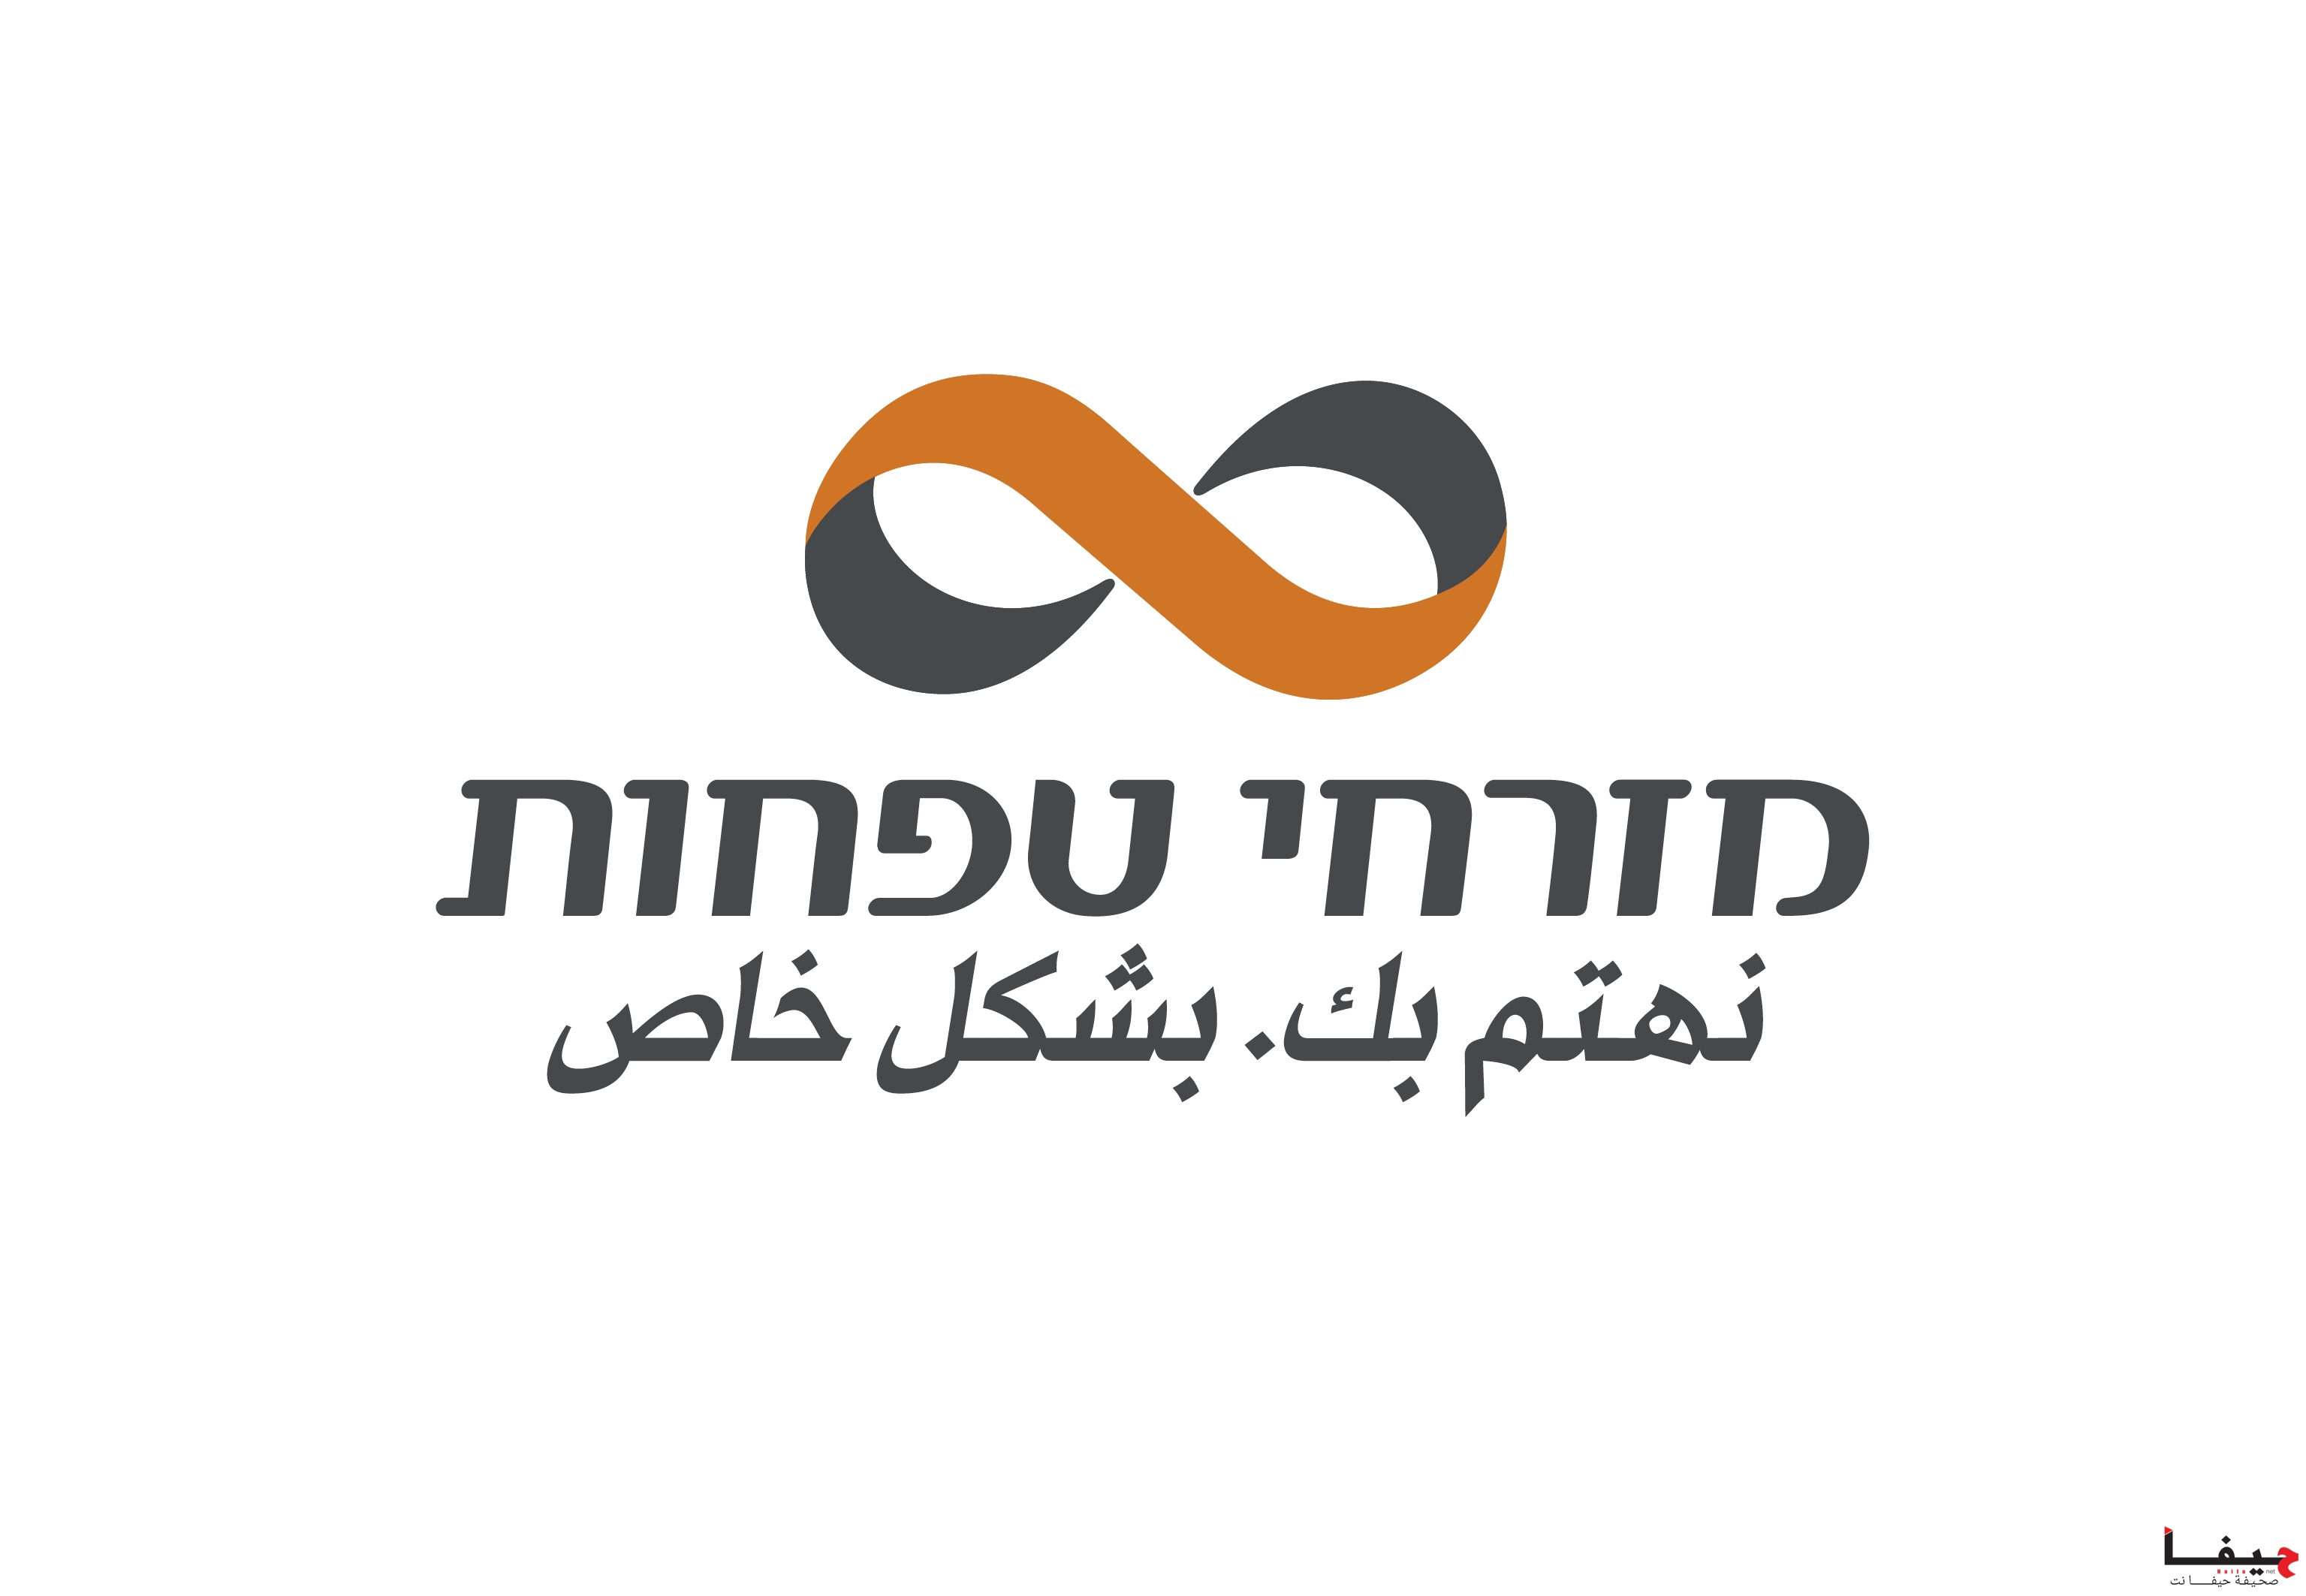 MZR_logo